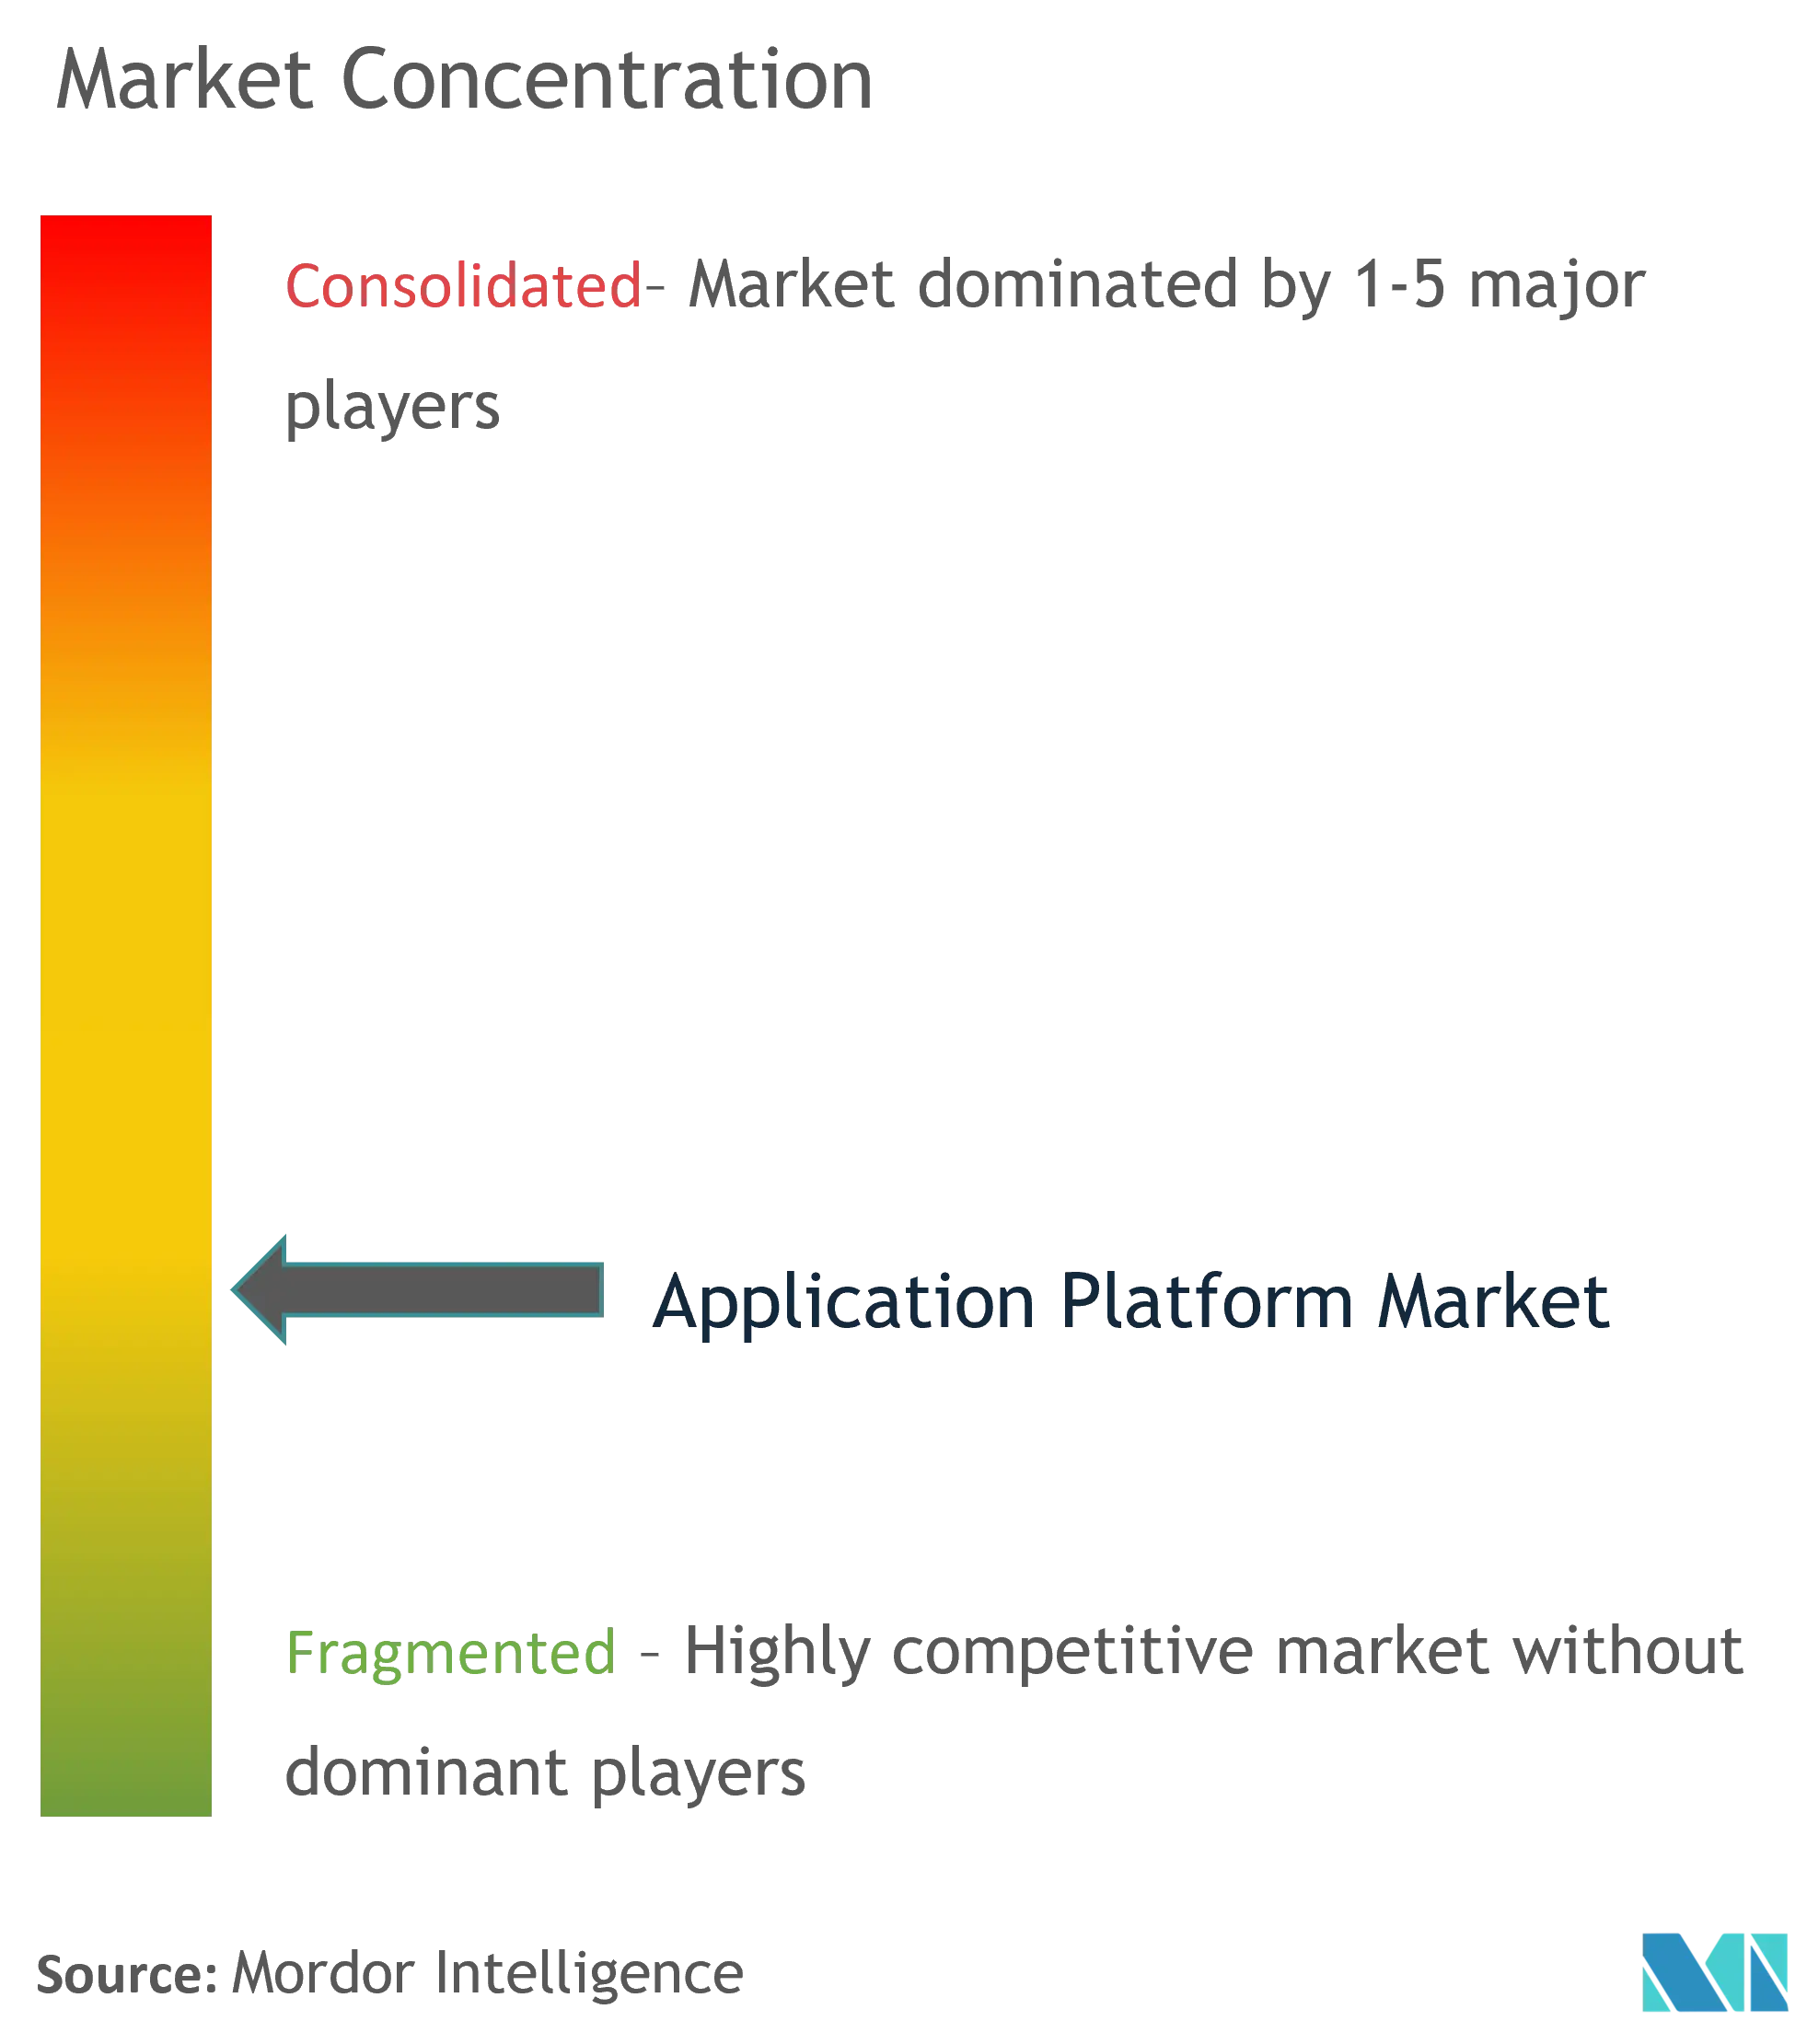 Application Platform Market Concentration